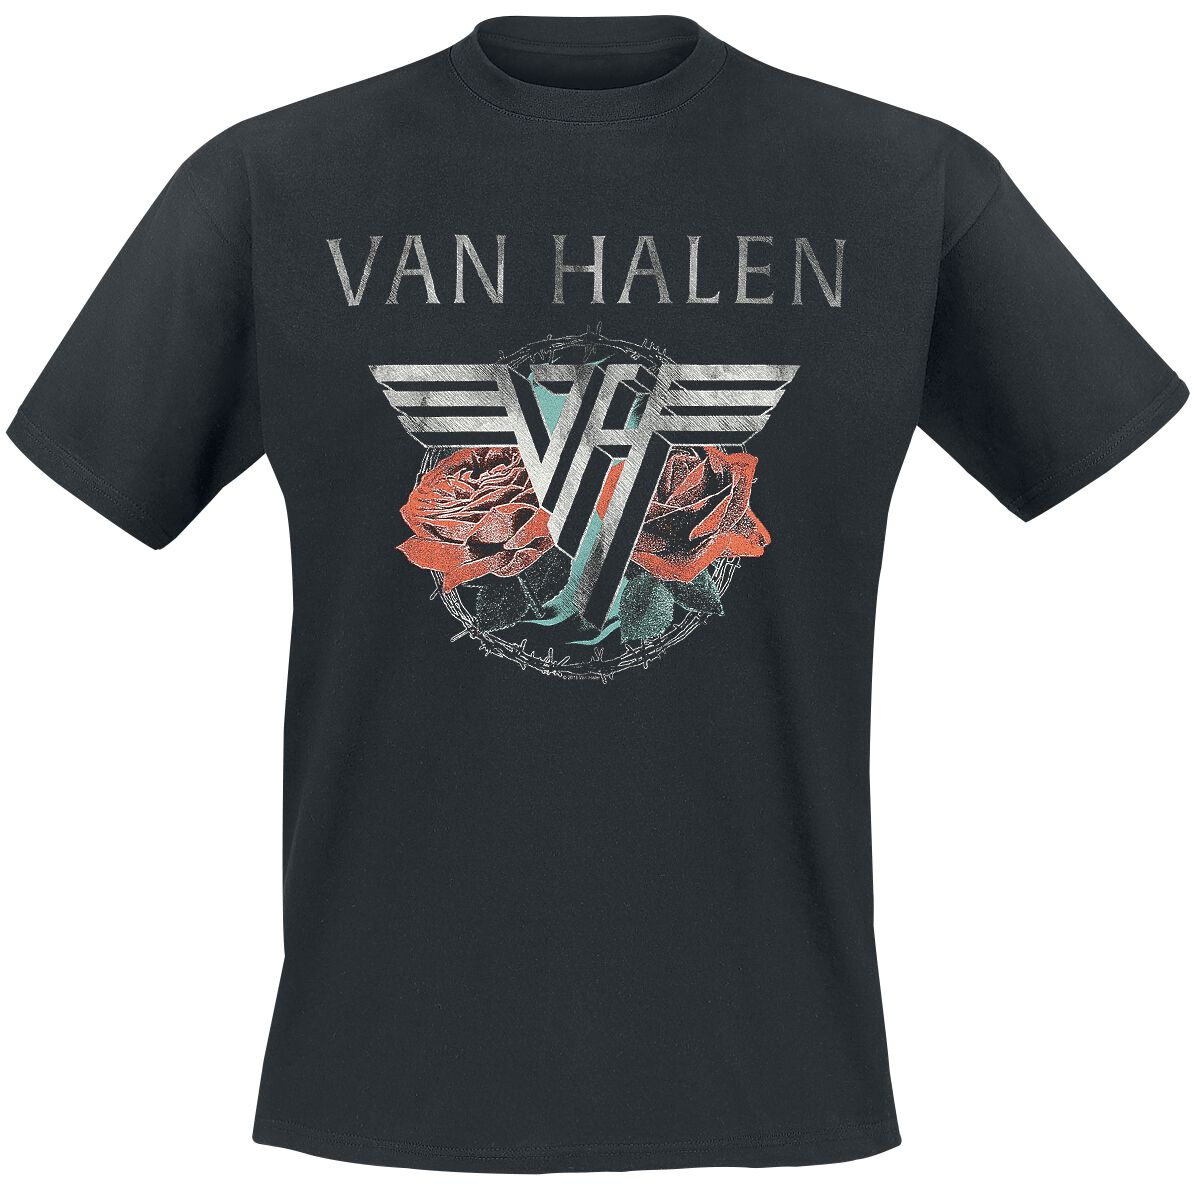 Van Halen T-Shirt - Tour 1984 - S bis 3XL - für Männer - Größe S - schwarz  - Lizenziertes Merchandise!